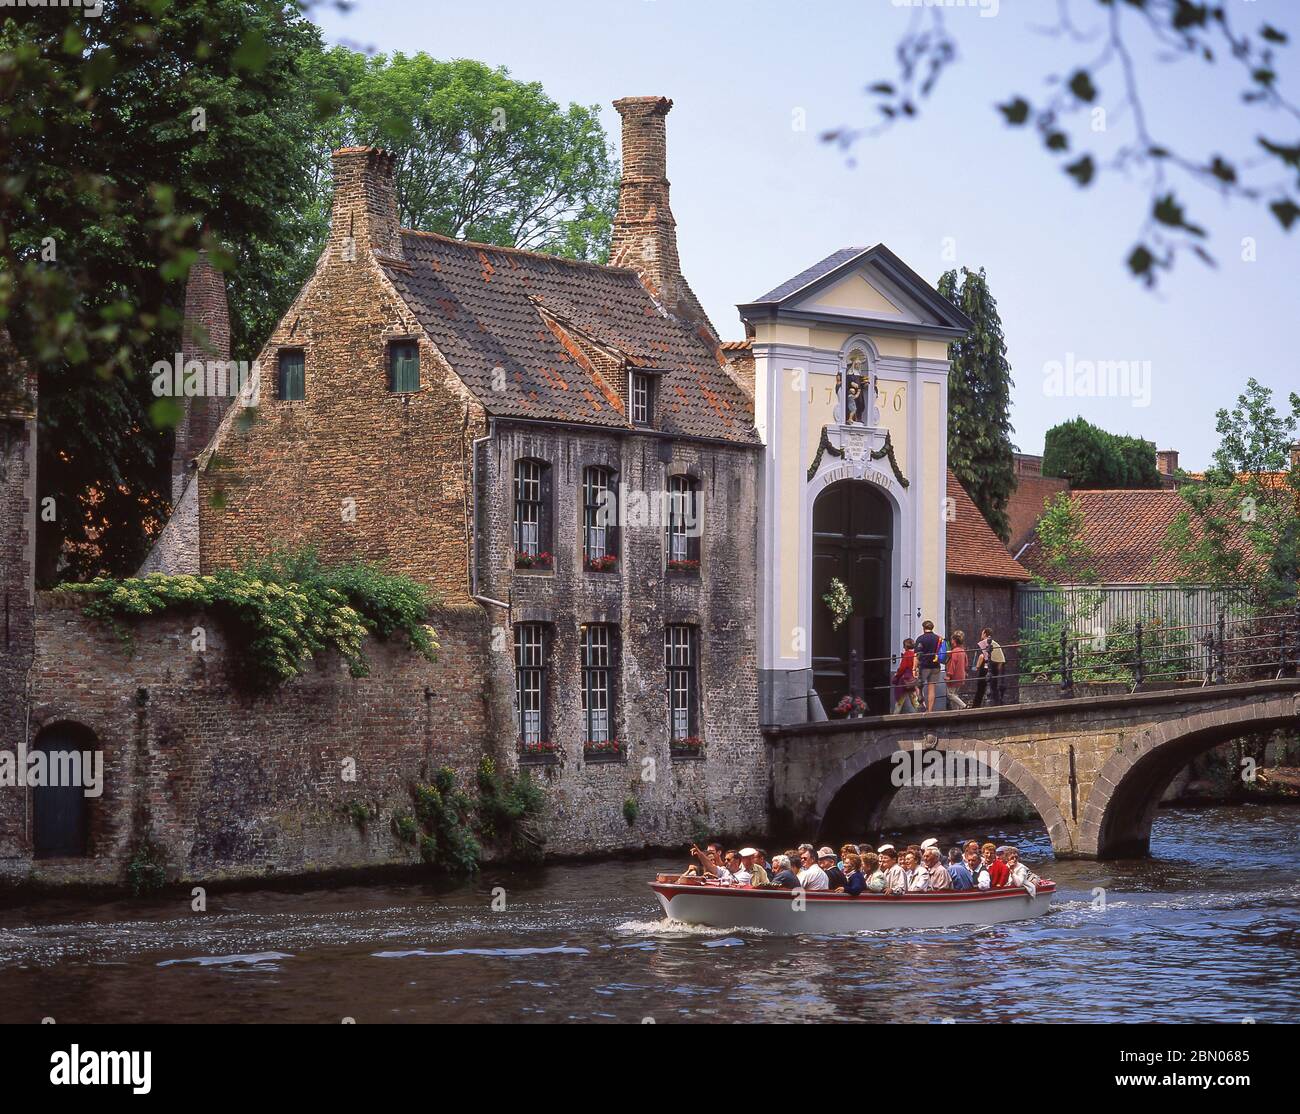 Bateau-canal touristique passant par le Béguinage (Begijnhuiseje), Bruges (Brugge), province de Flandre Occidentale, Royaume de Belgique. Banque D'Images